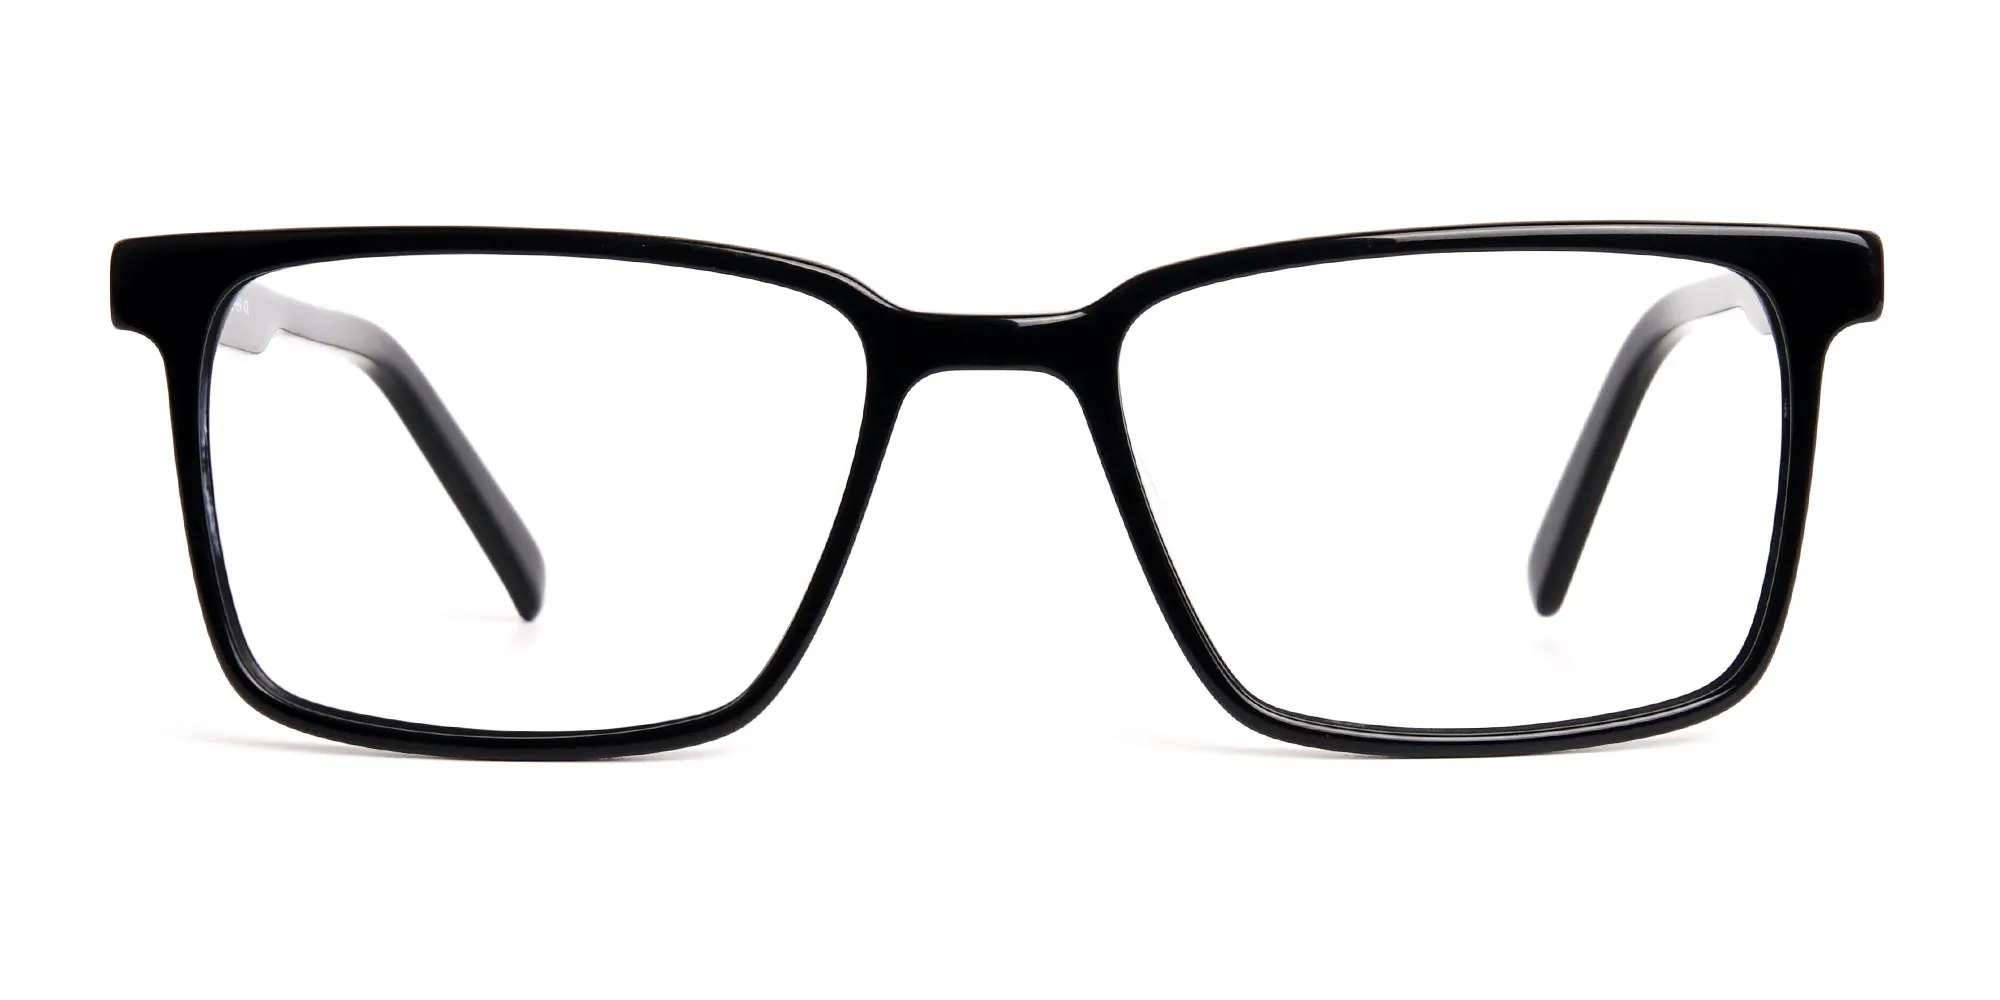 Designer-Black-Rectangular-Full-Rim-Glasses-frames-2